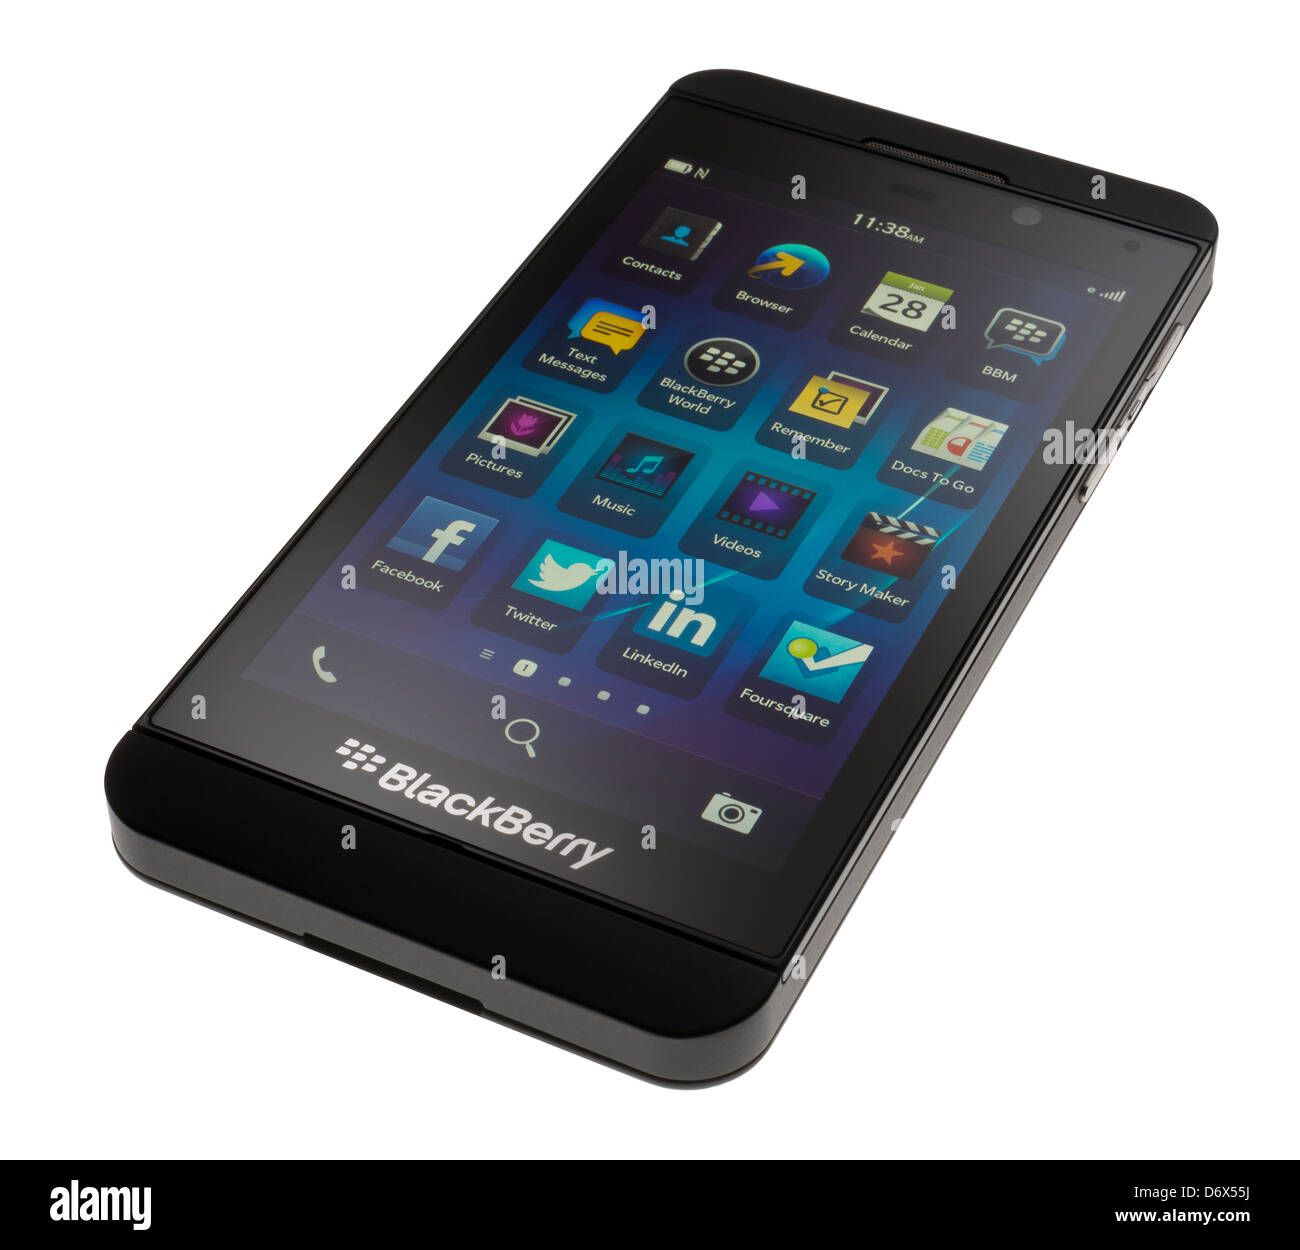 Blackberry Z10 smartphone Stock Photo